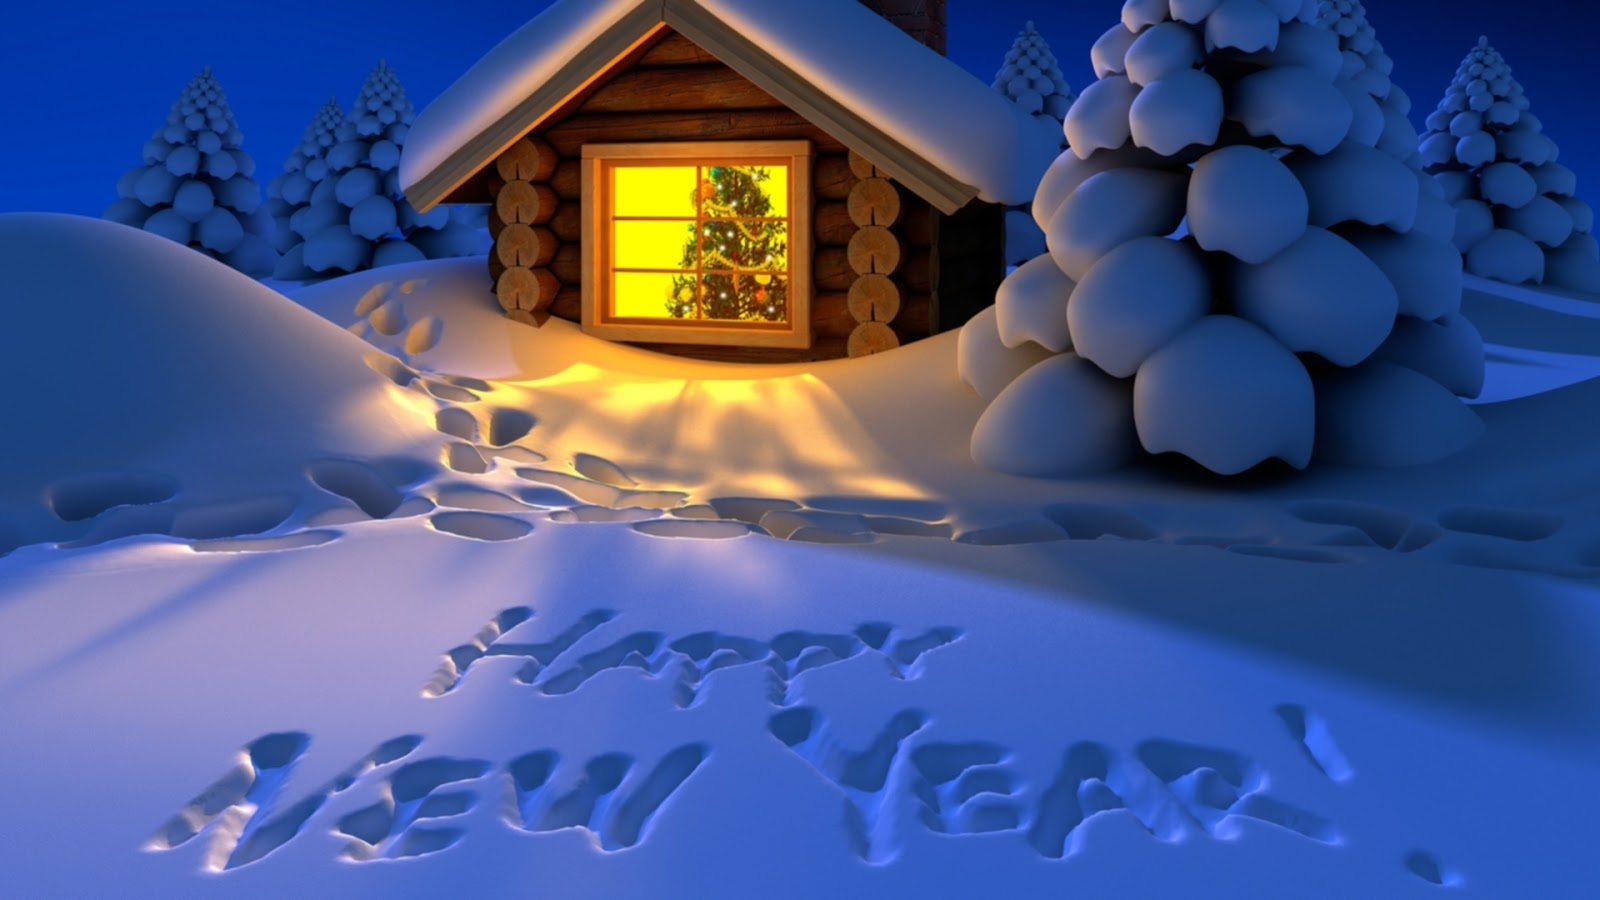 Happy New Year Cry104fm Munity Radio Youghal